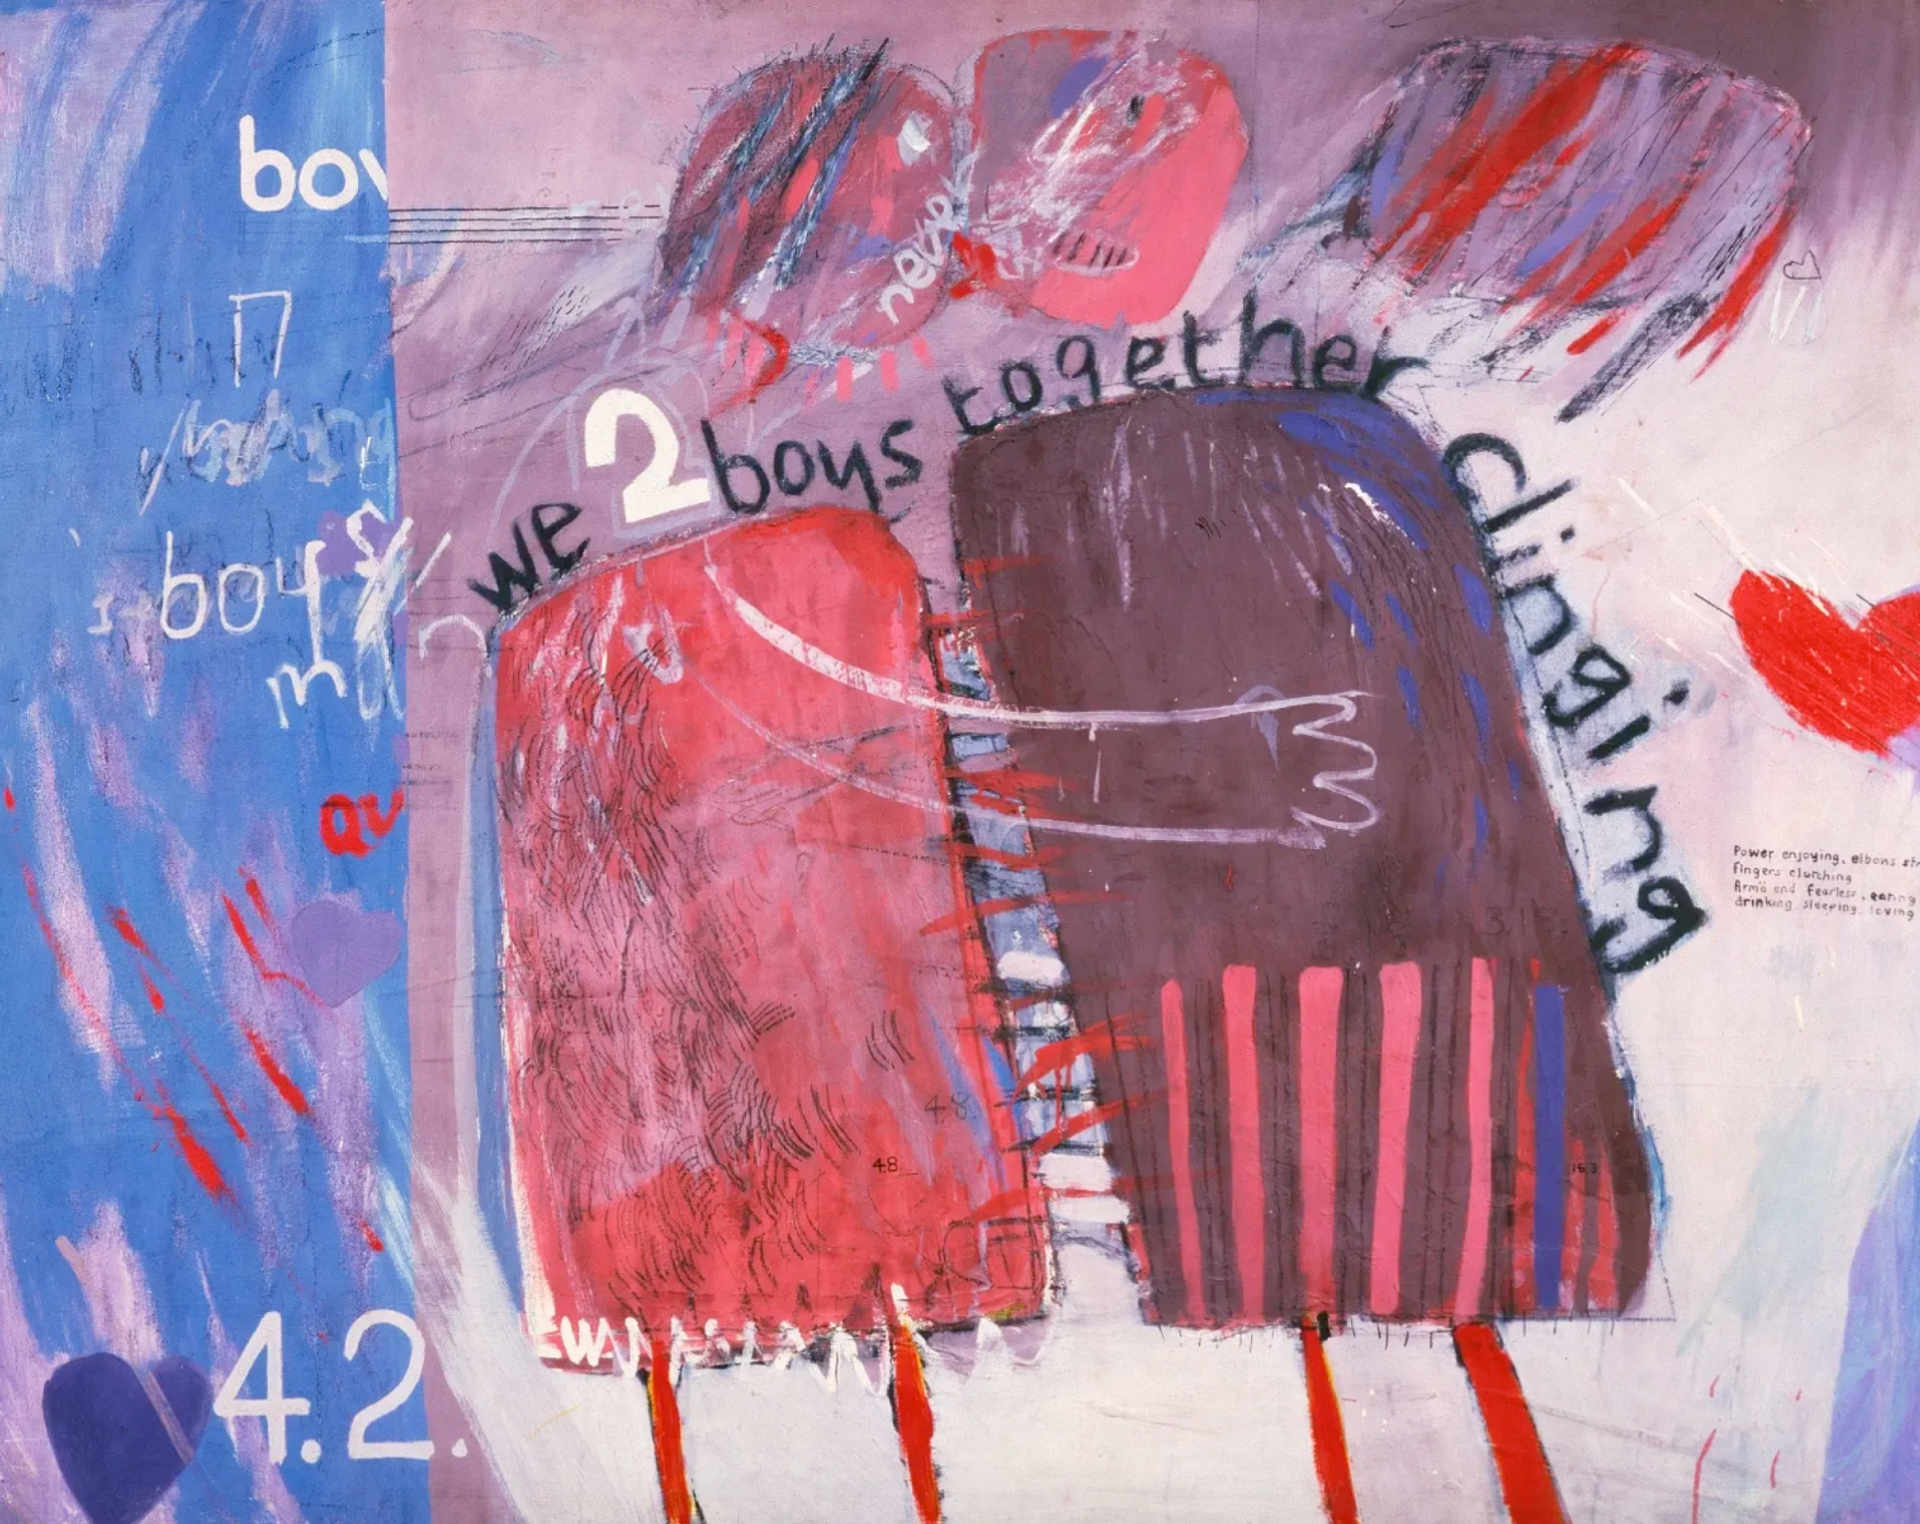 We Two Boys Together Clinging by David Hockney - MyArtBroker